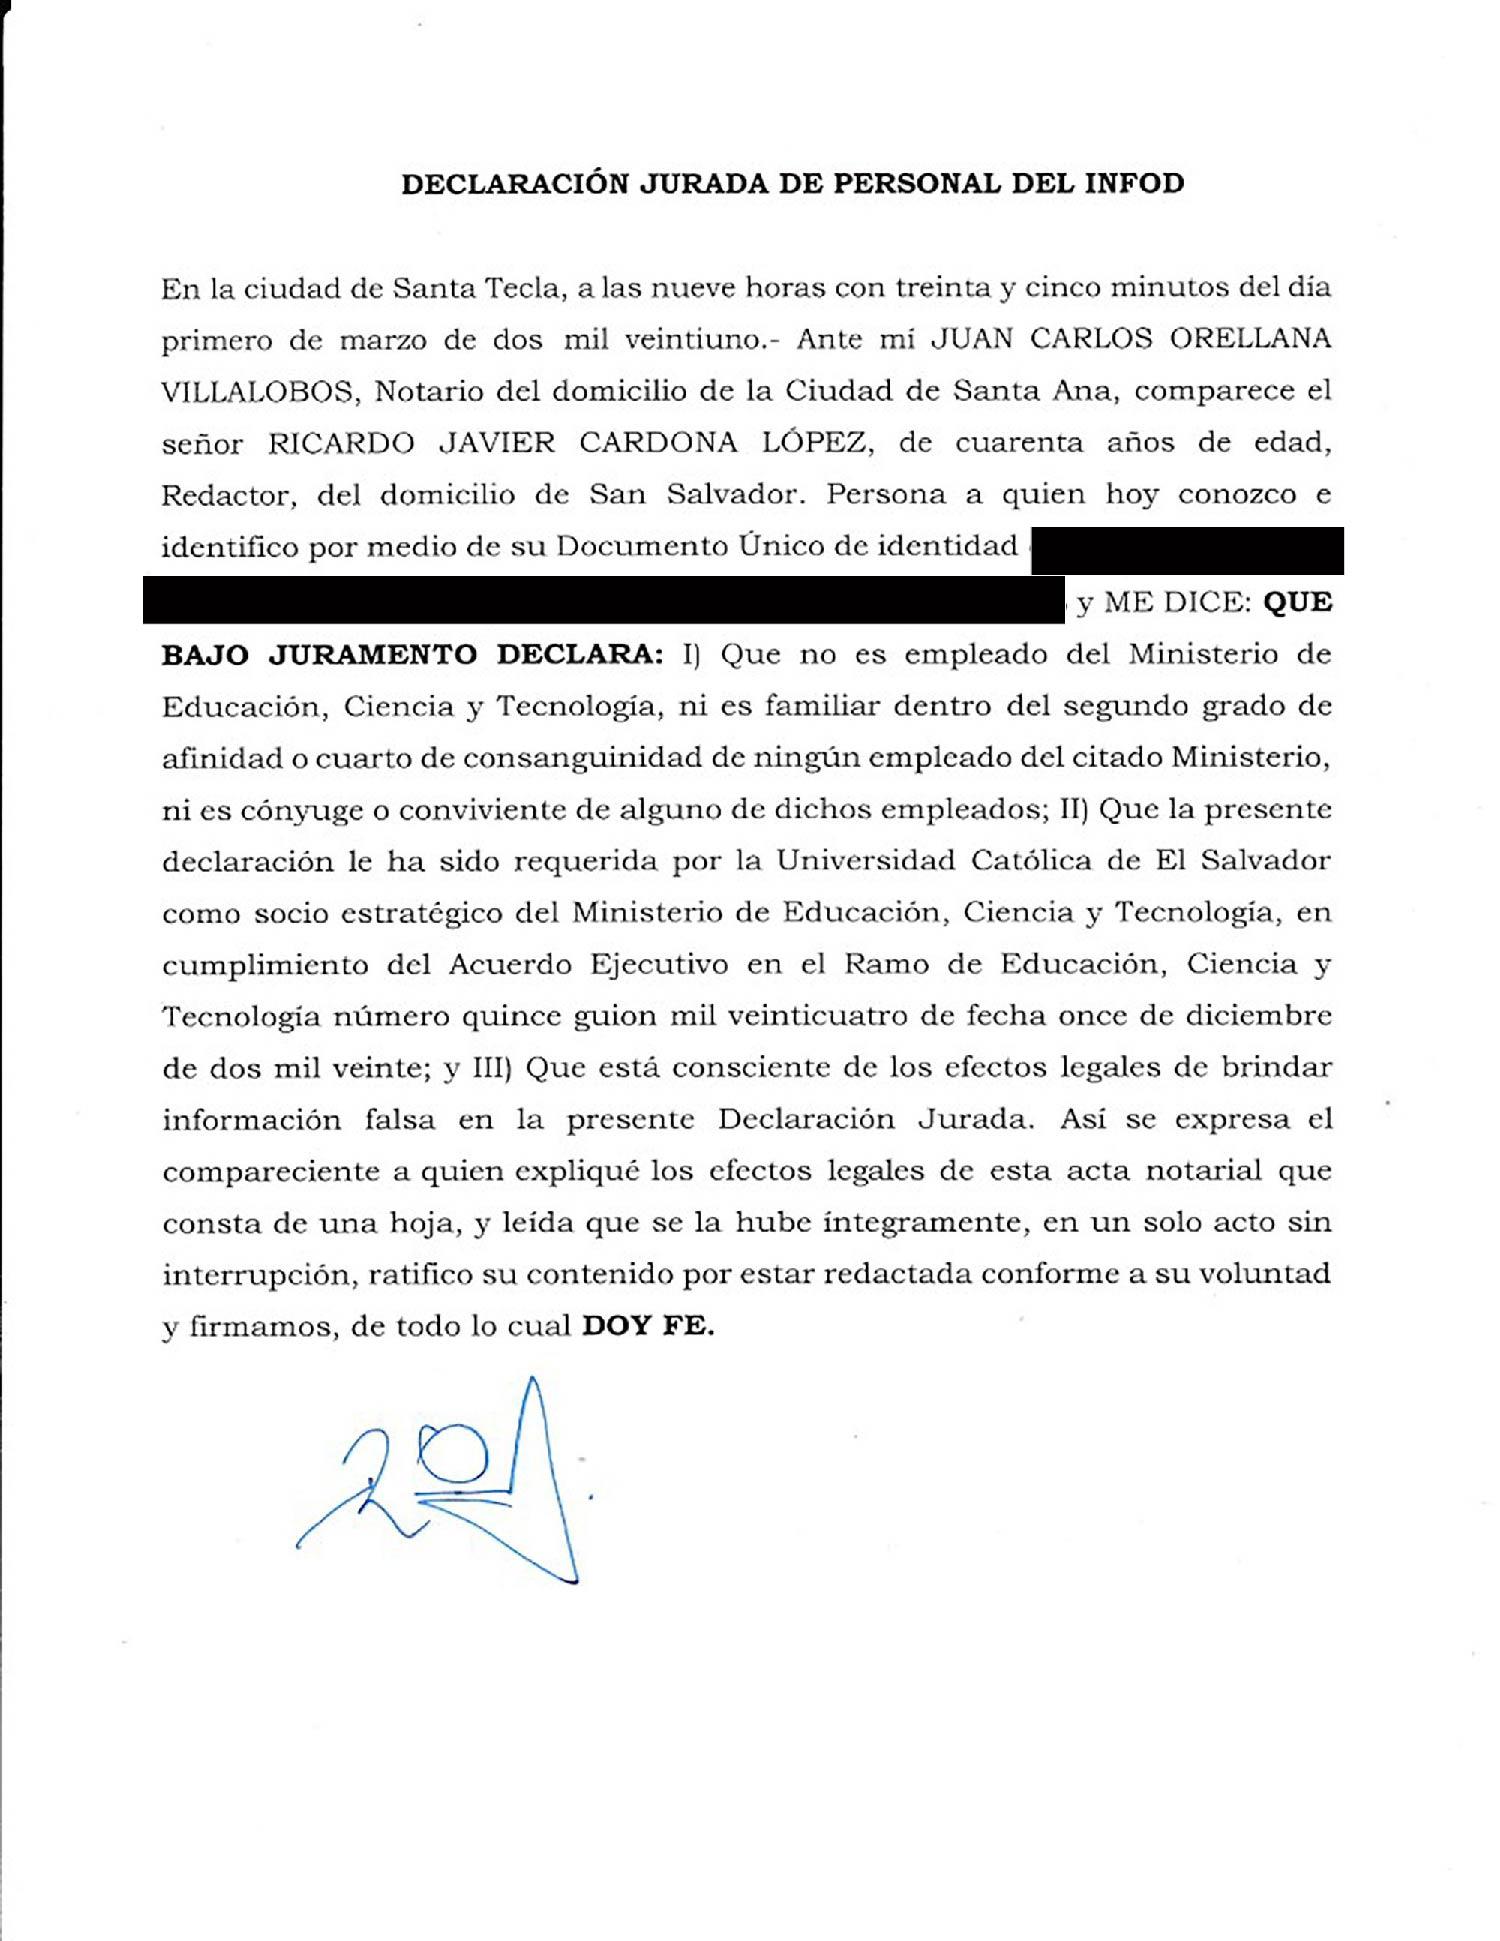 Javier Cardona presentó una declaración jurada en la que aseguró que ninguno de sus parientes trabajaba para el Ministerio de Educación.